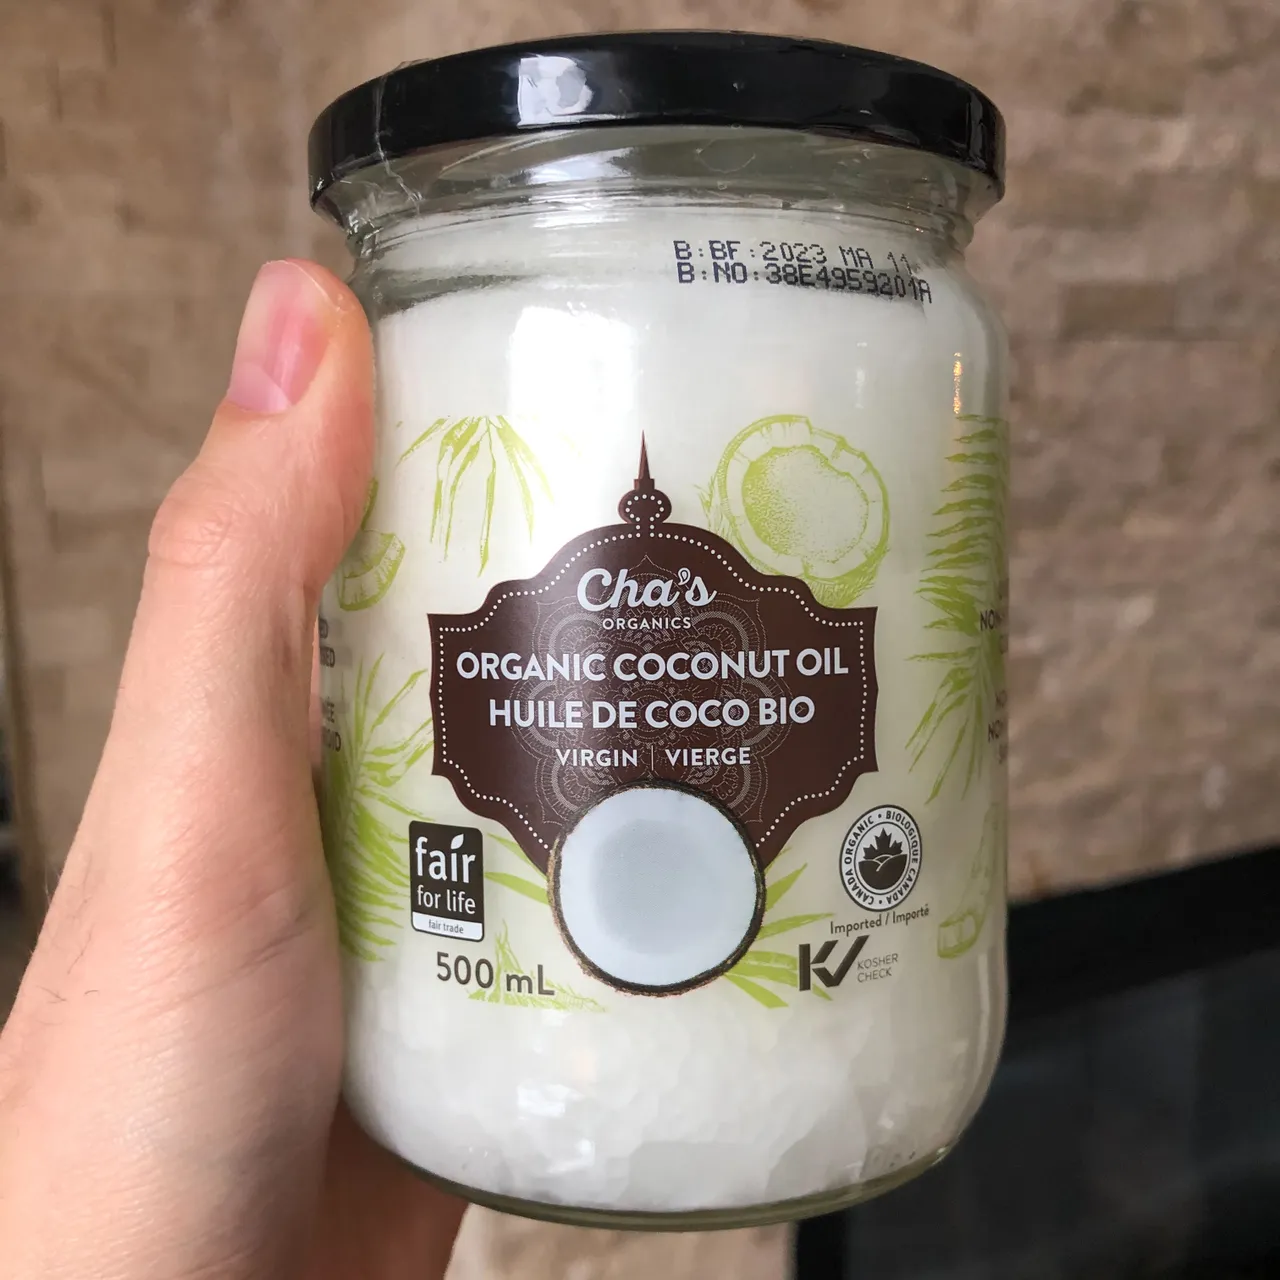 BN Cha’s Organic Coconut Oil photo 1